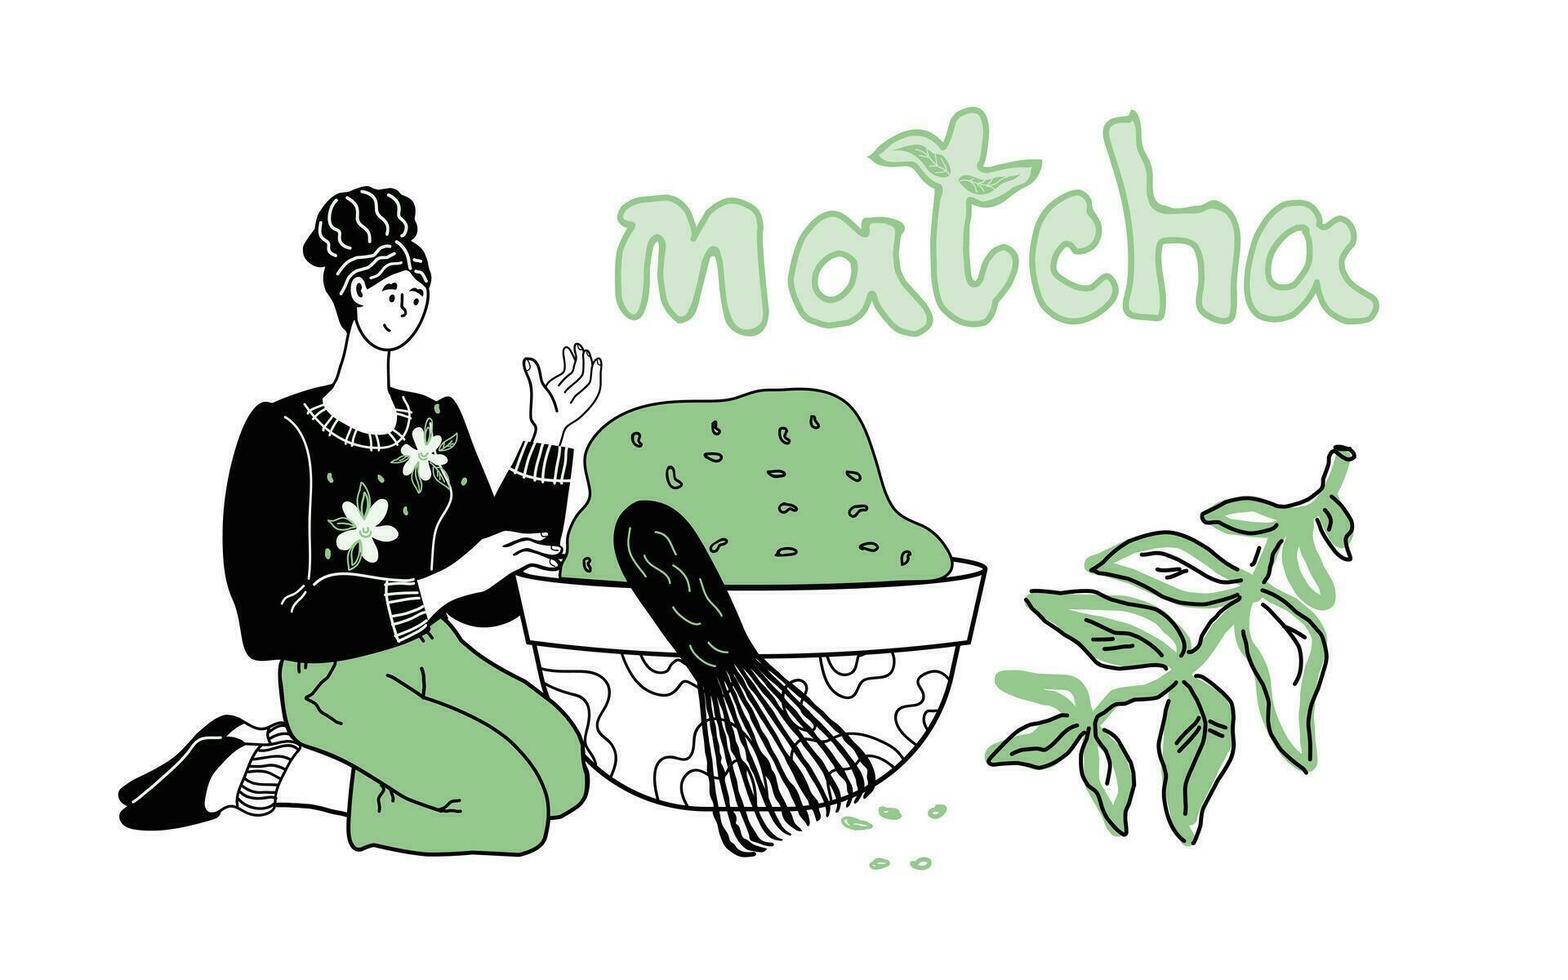 mulher preparando matcha chá desenho animado vetor ilustração. bandeira ou cartão do japonês ou chinês verde matcha chá dentro mão desenhado estilo para embalagem ou casa de chá cafeteria.